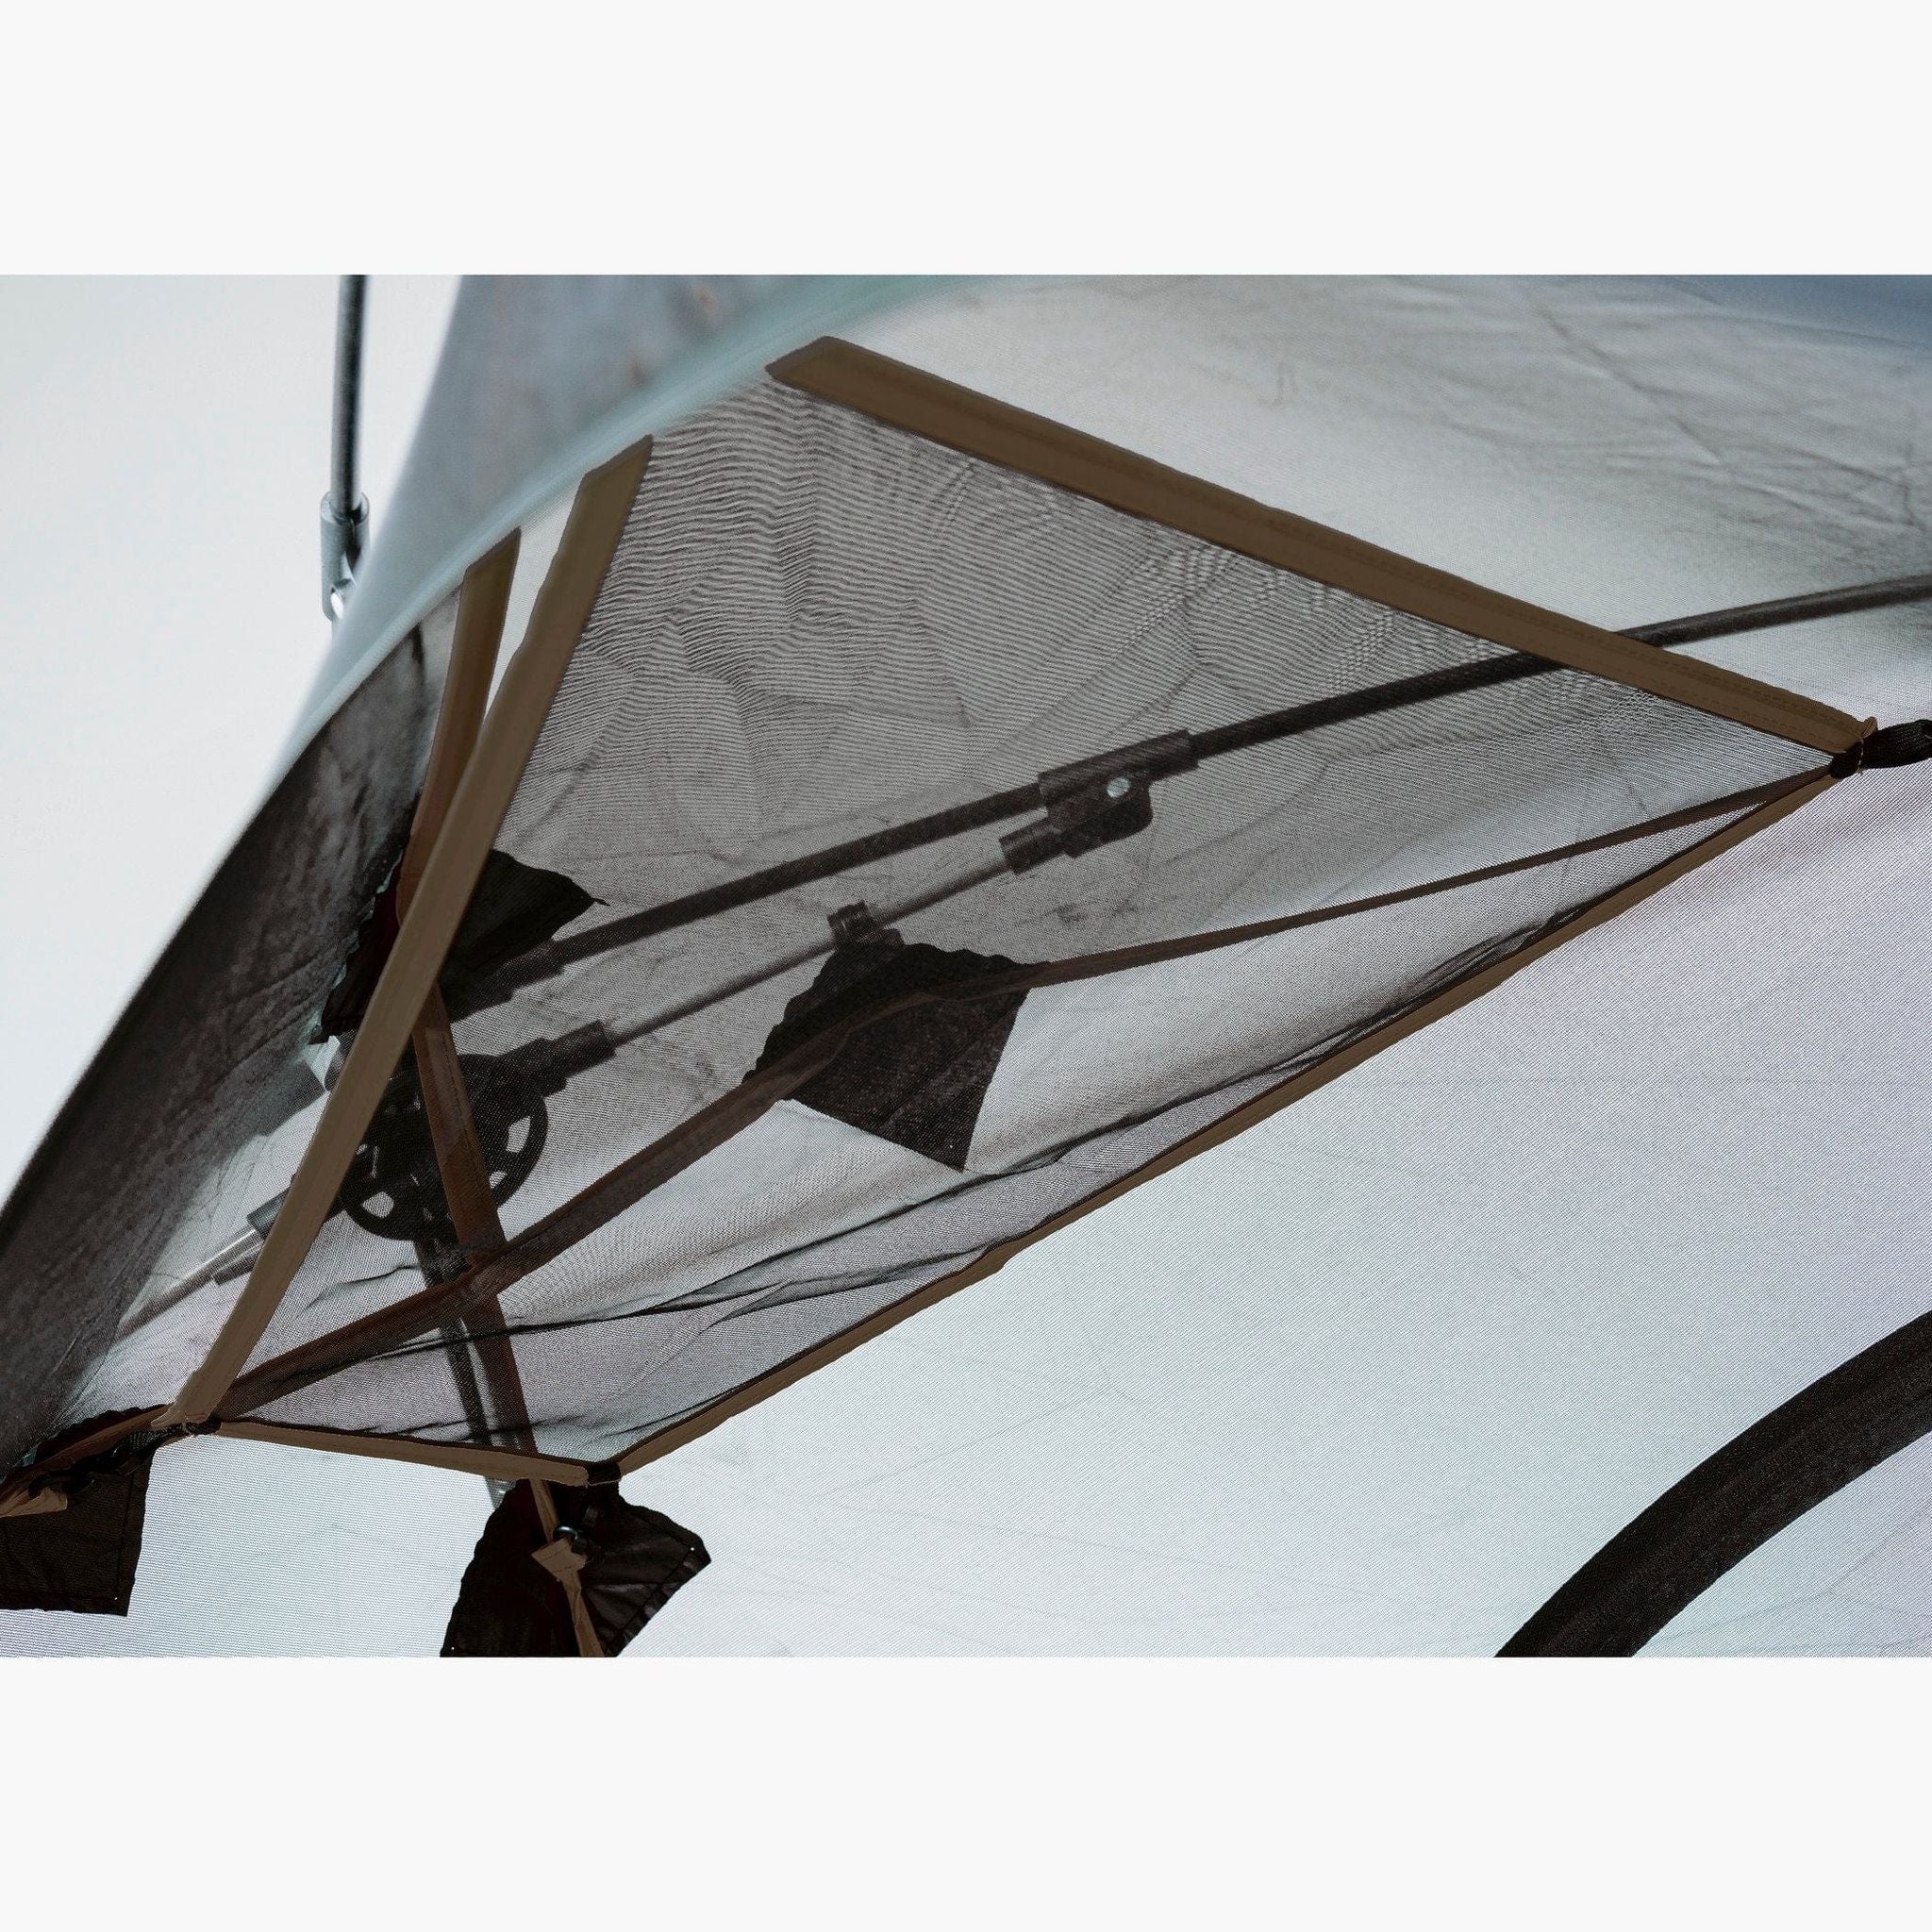 Teton Sports Vista 2-Person Quick Tent in Brown